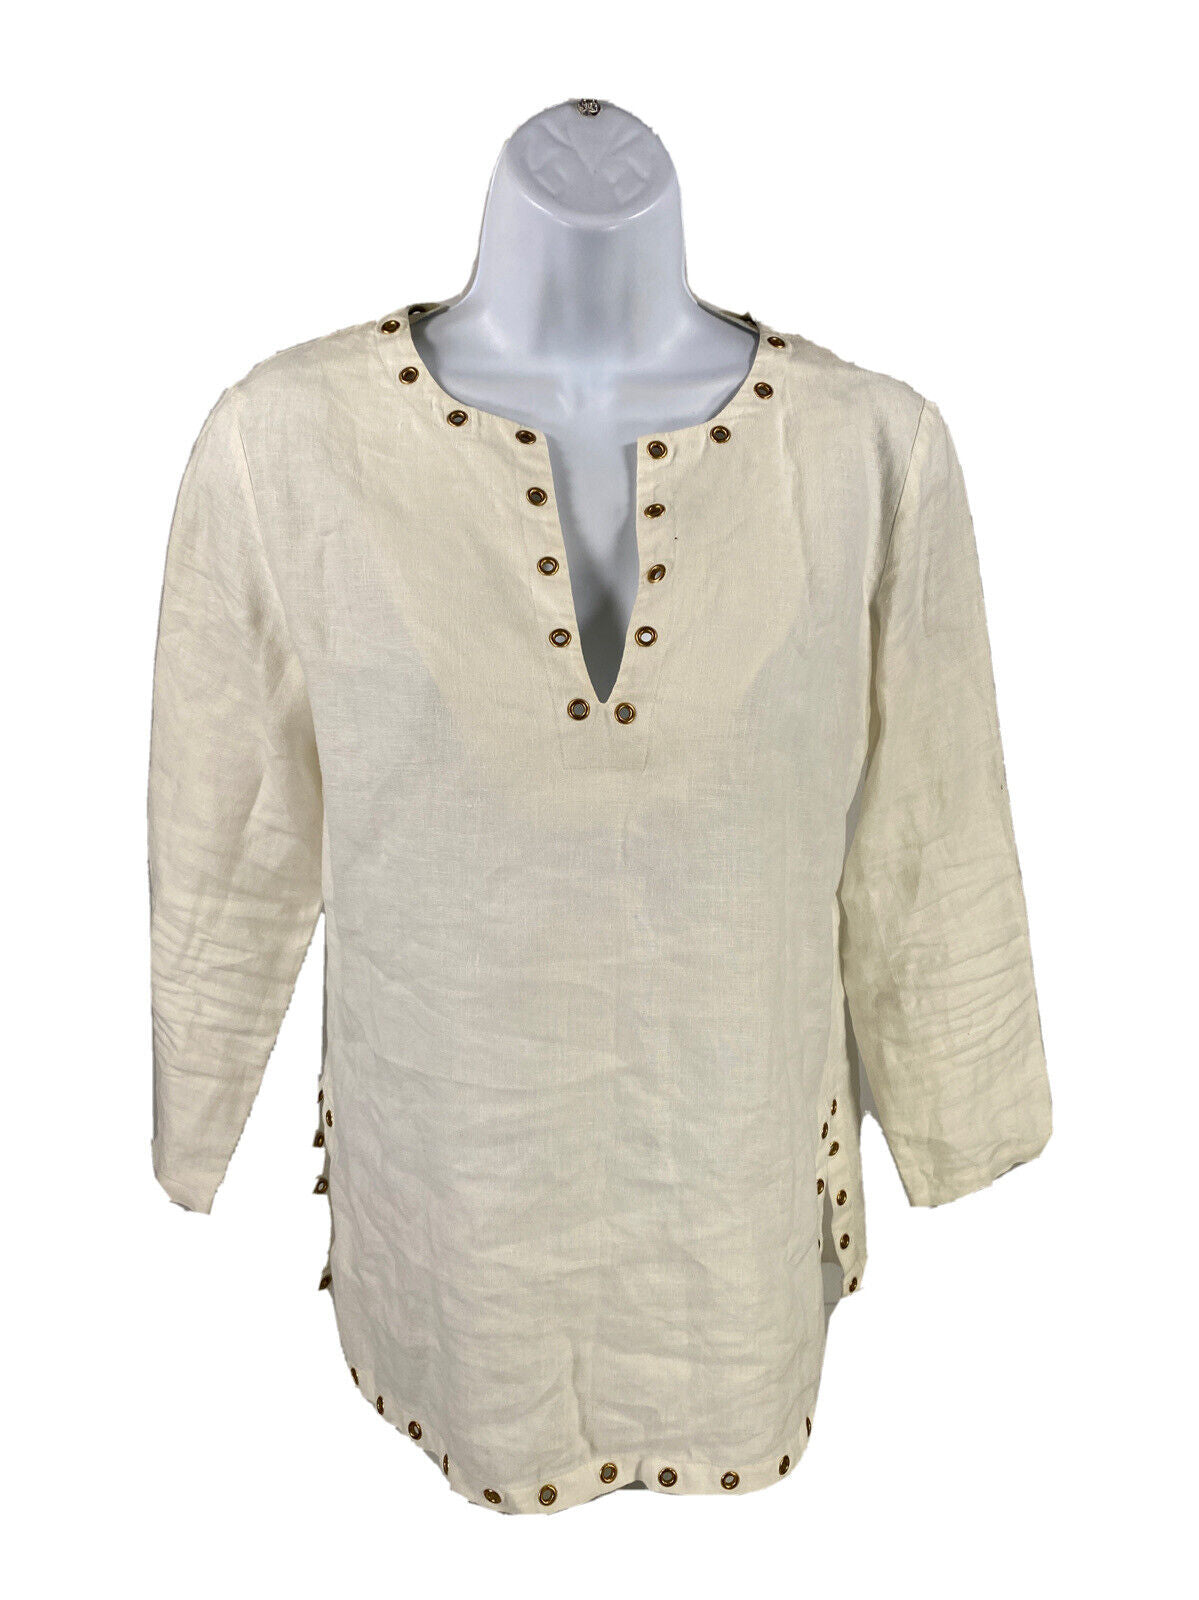 Michael Kors Women's White Long Sleeve V-Neck Embellished Shirt - XS